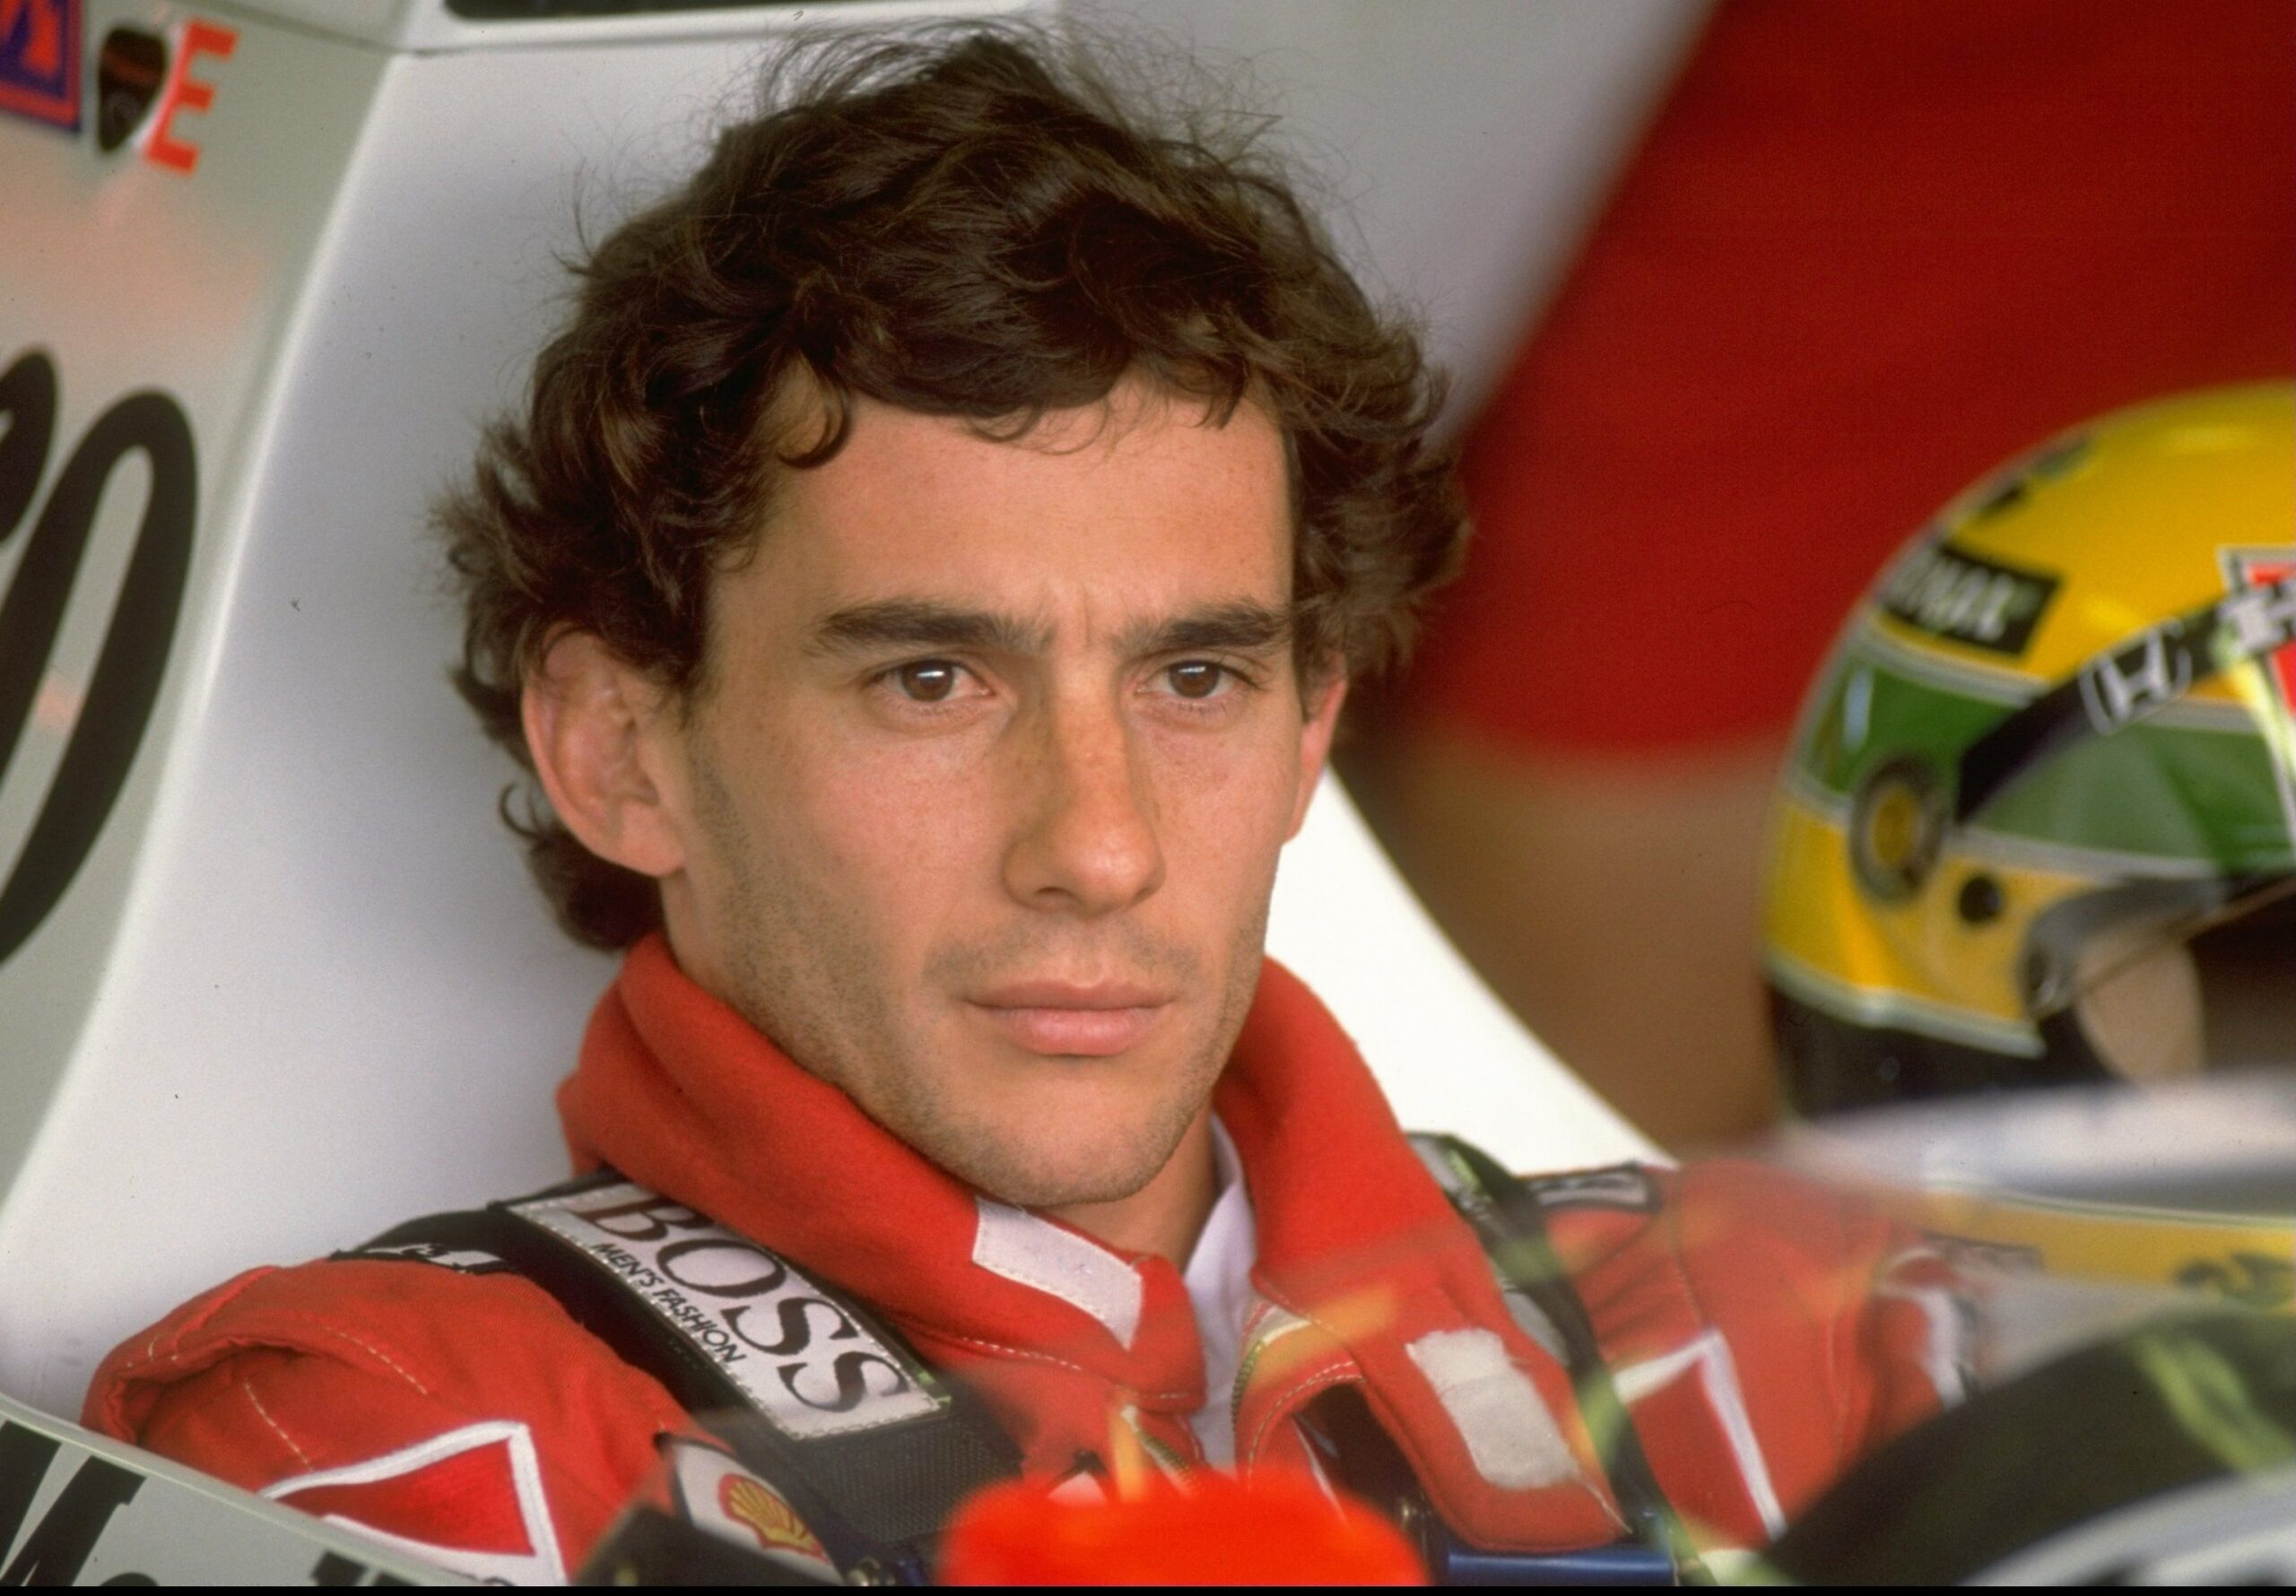 Sicilia, cittadinanza onoraria  di Siculiana ad Ayrton Senna: bisnonna del campione di F1 era originaria del comune